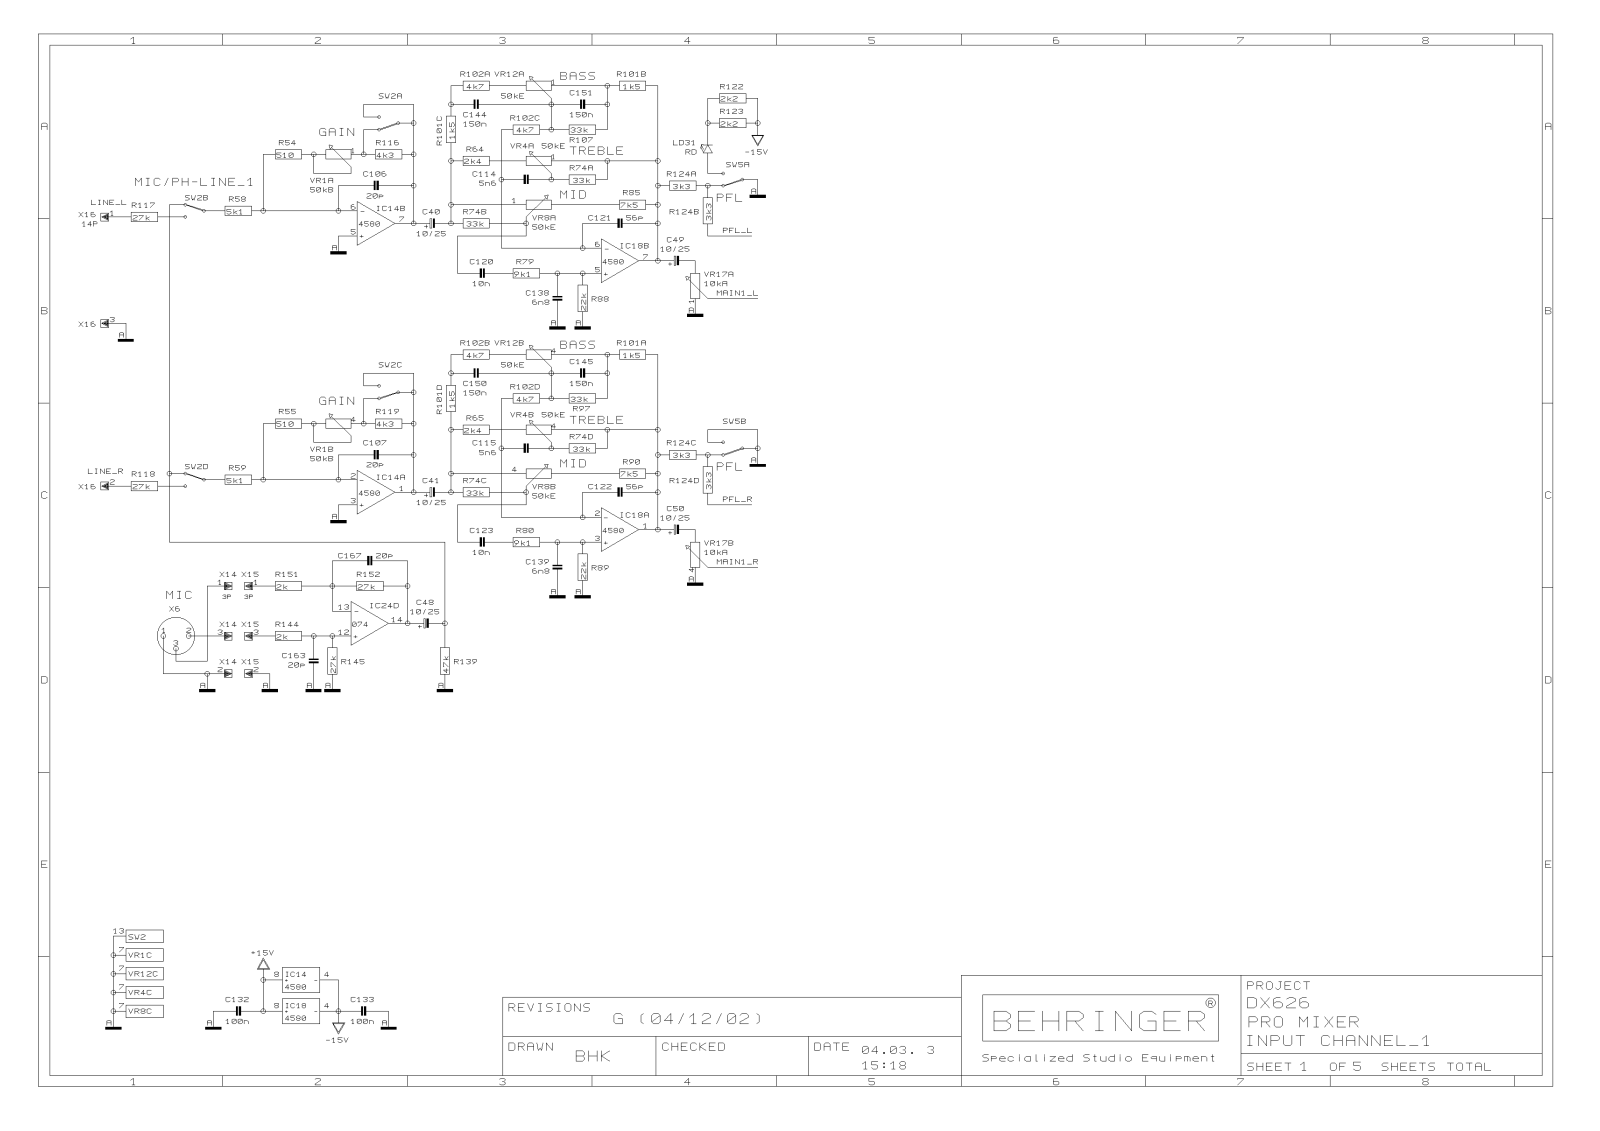 Behringer DX-626 Schematic